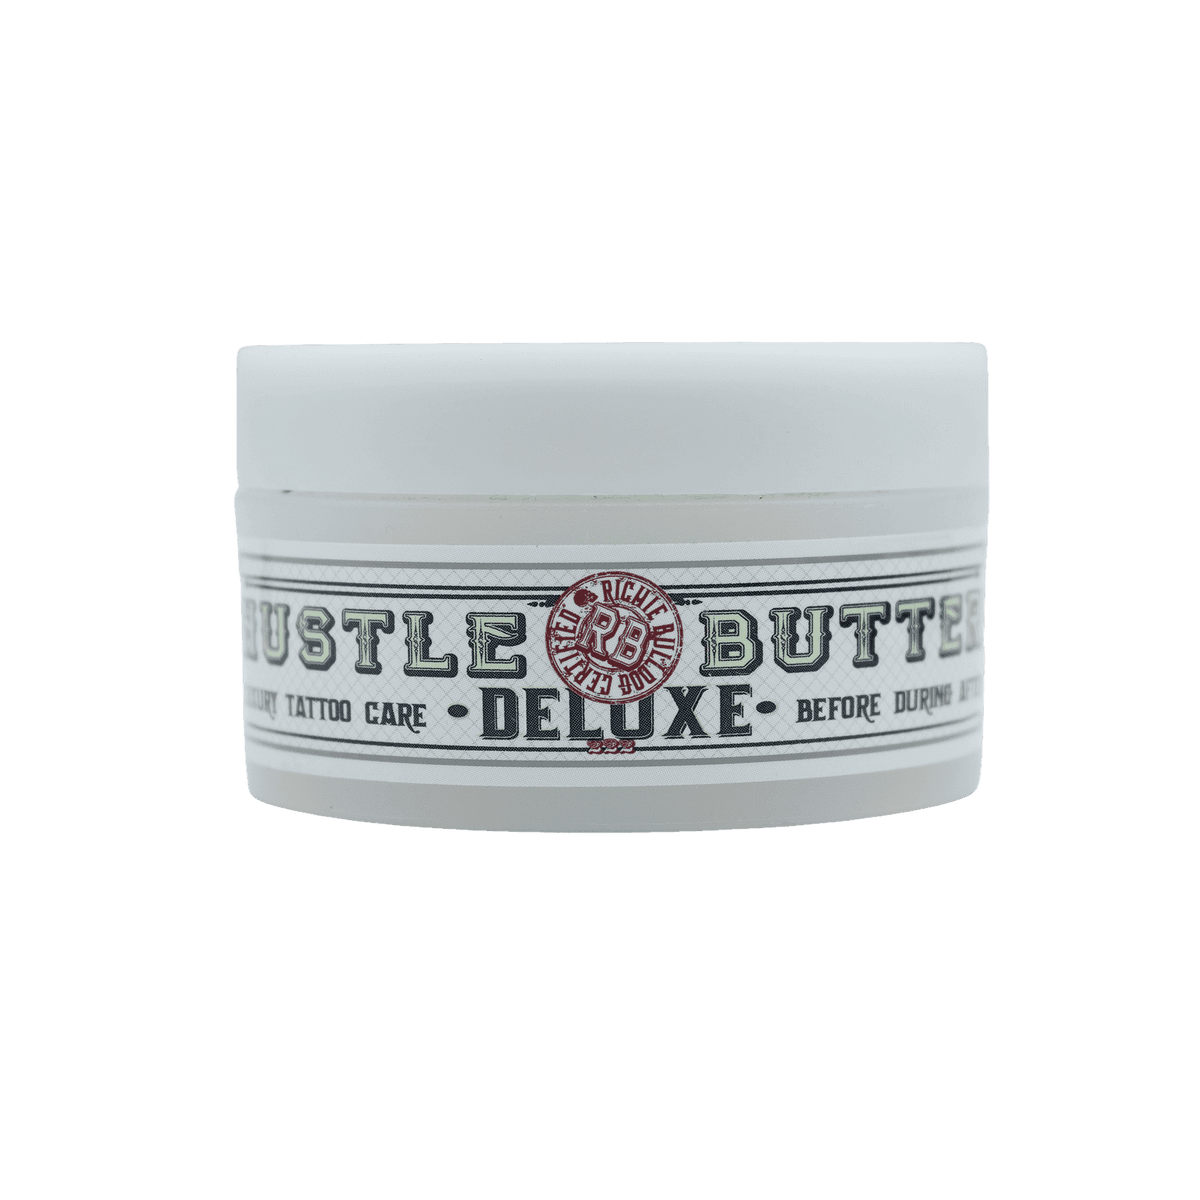 HUSTLE BUTTER DELUXE tattoo butter